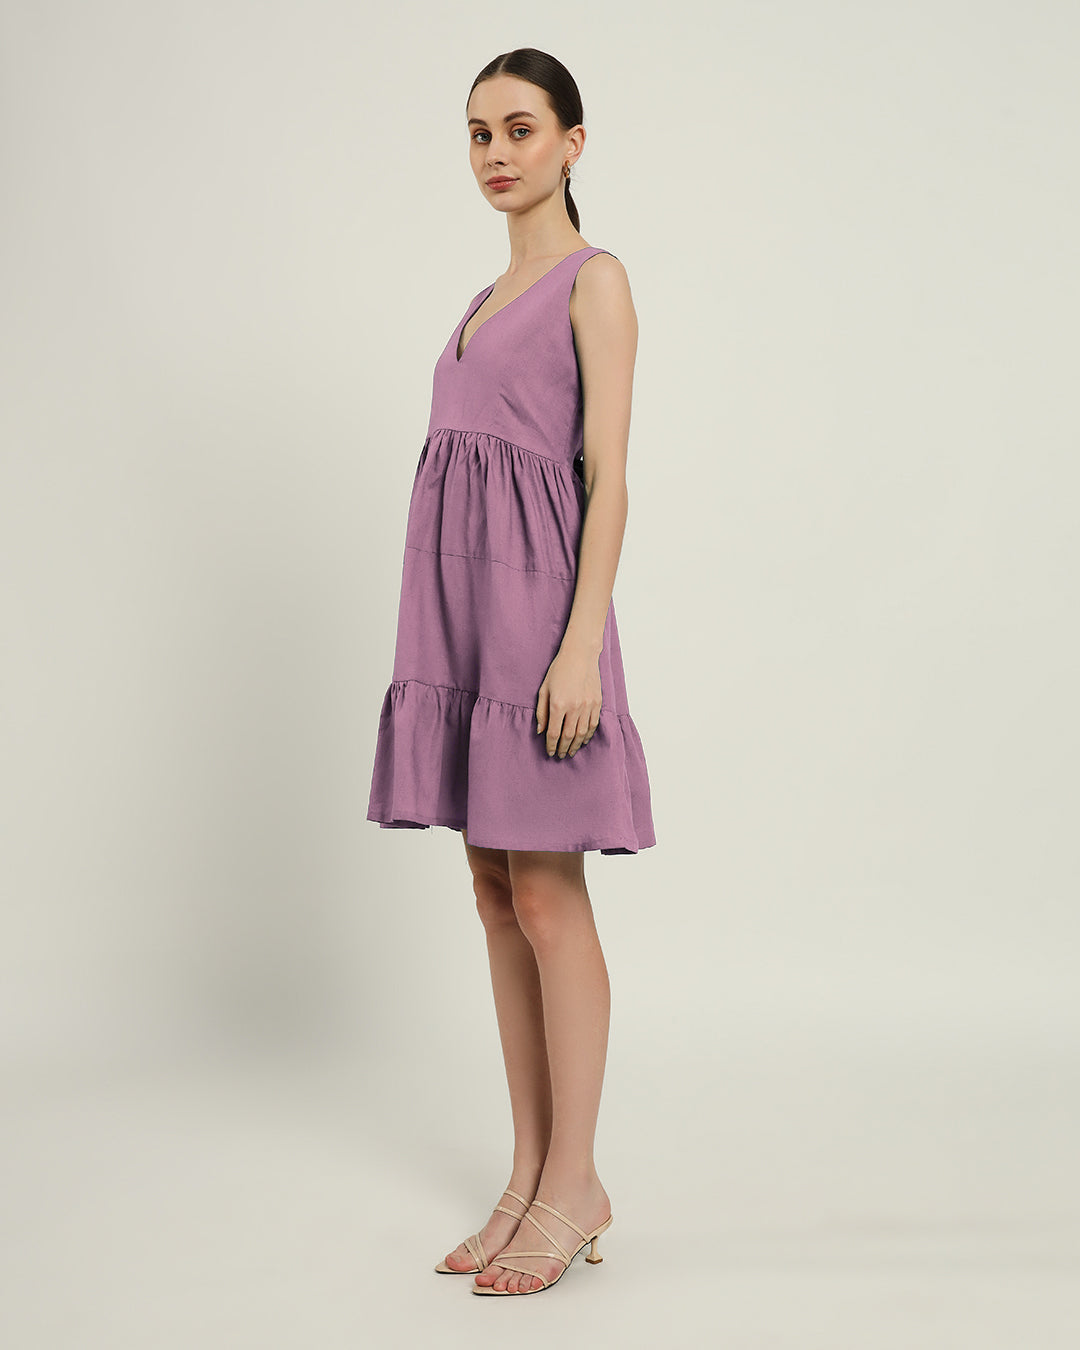 The Minsk Purple Swirl Dress